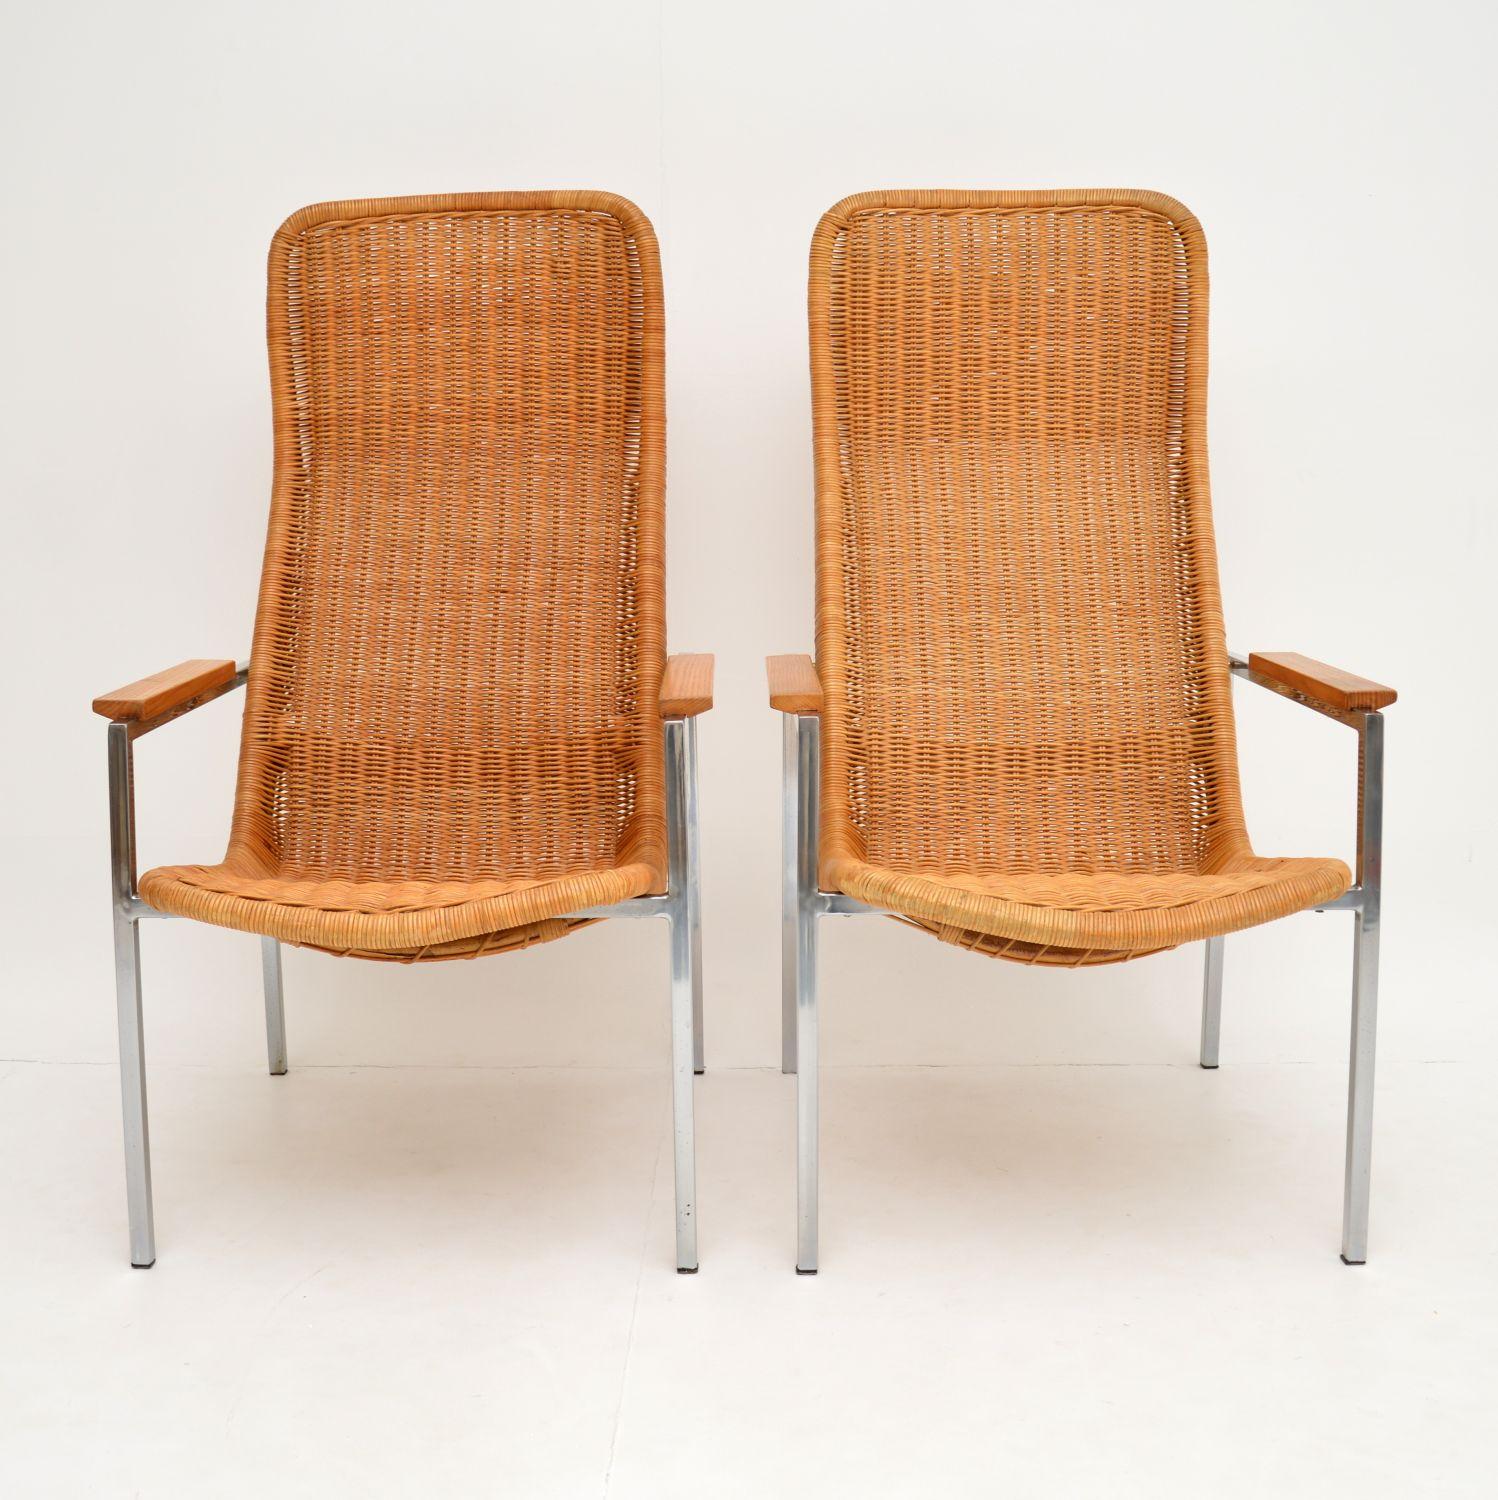 Une superbe paire de fauteuils à haut dossier, fabriqués en Hollande dans les années 1960. Ils ont été conçus par Dirk Van Sliedrecht et fabriqués par Gebroeders Jonkers.

Ils sont de très bonne qualité et extrêmement confortables. Ils seraient